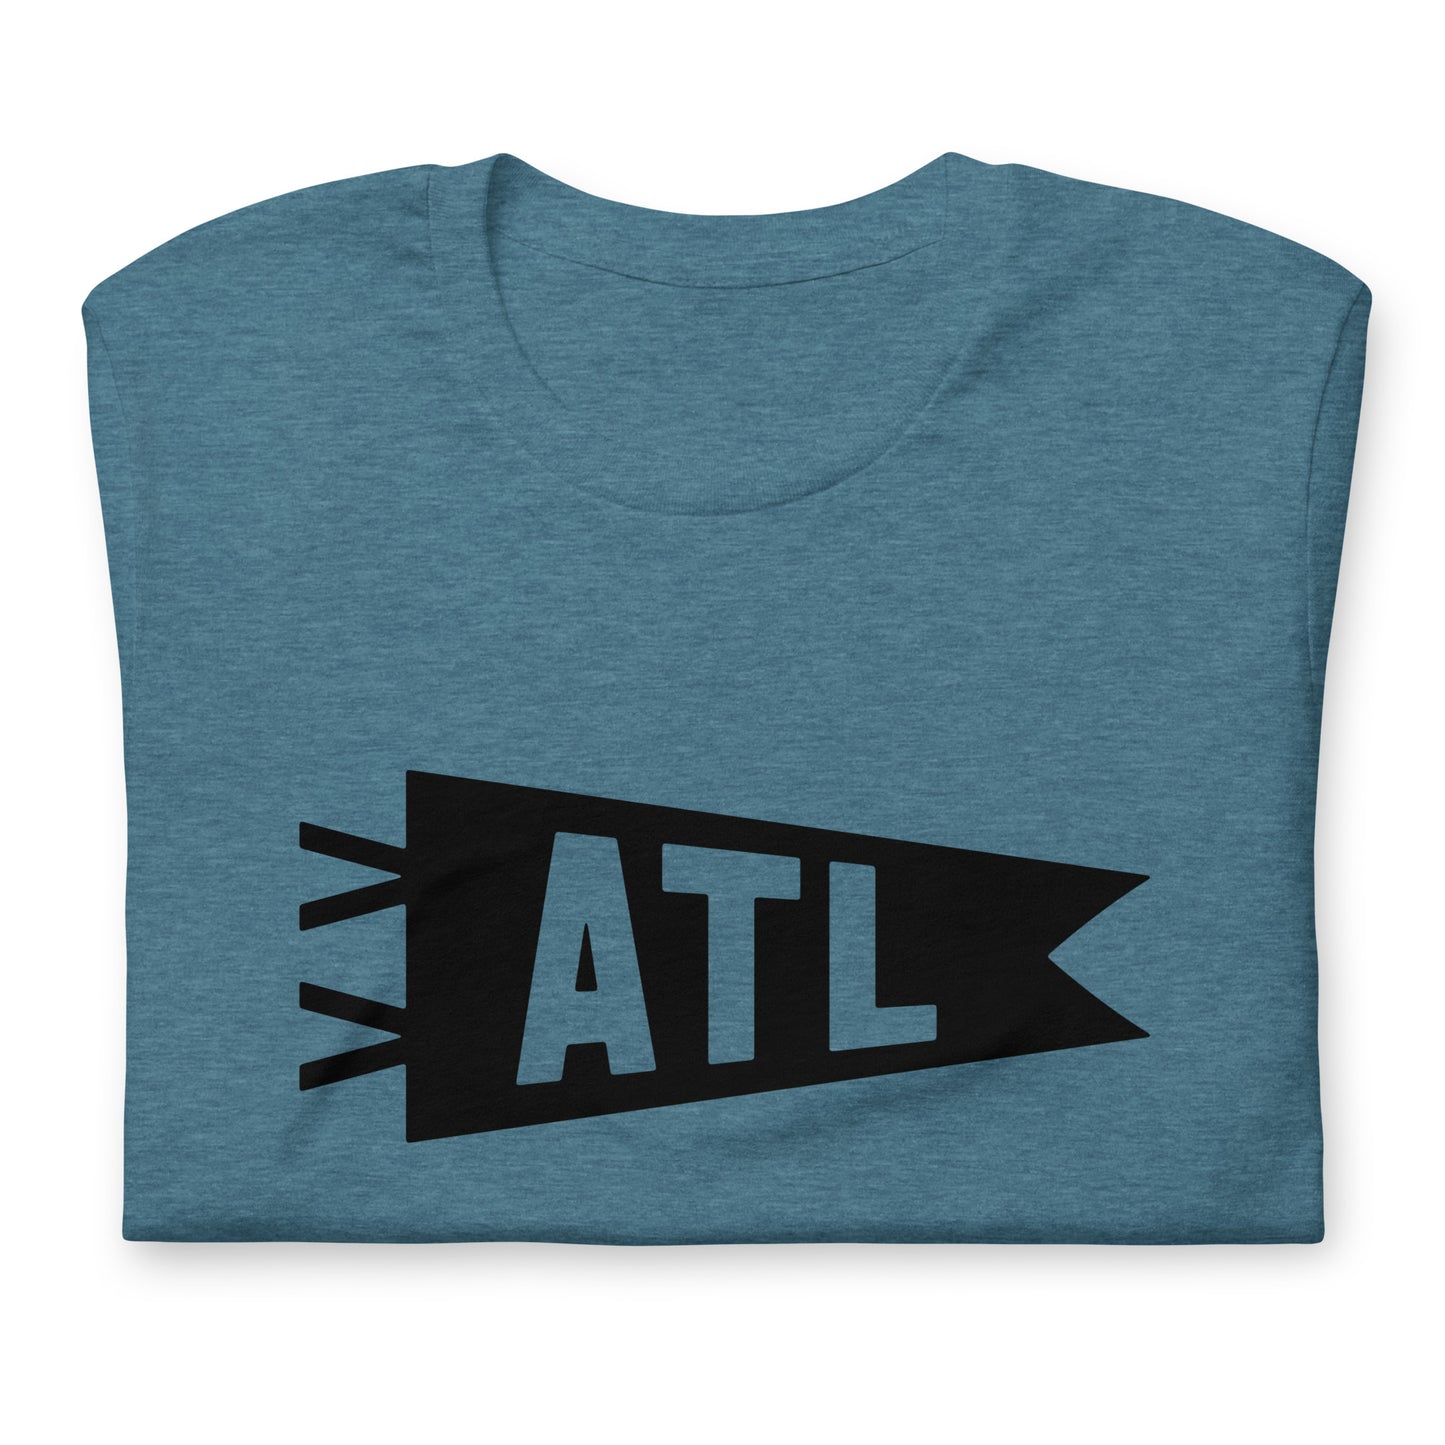 Airport Code T-Shirt - Black Graphic • ATL Atlanta • YHM Designs - Image 02